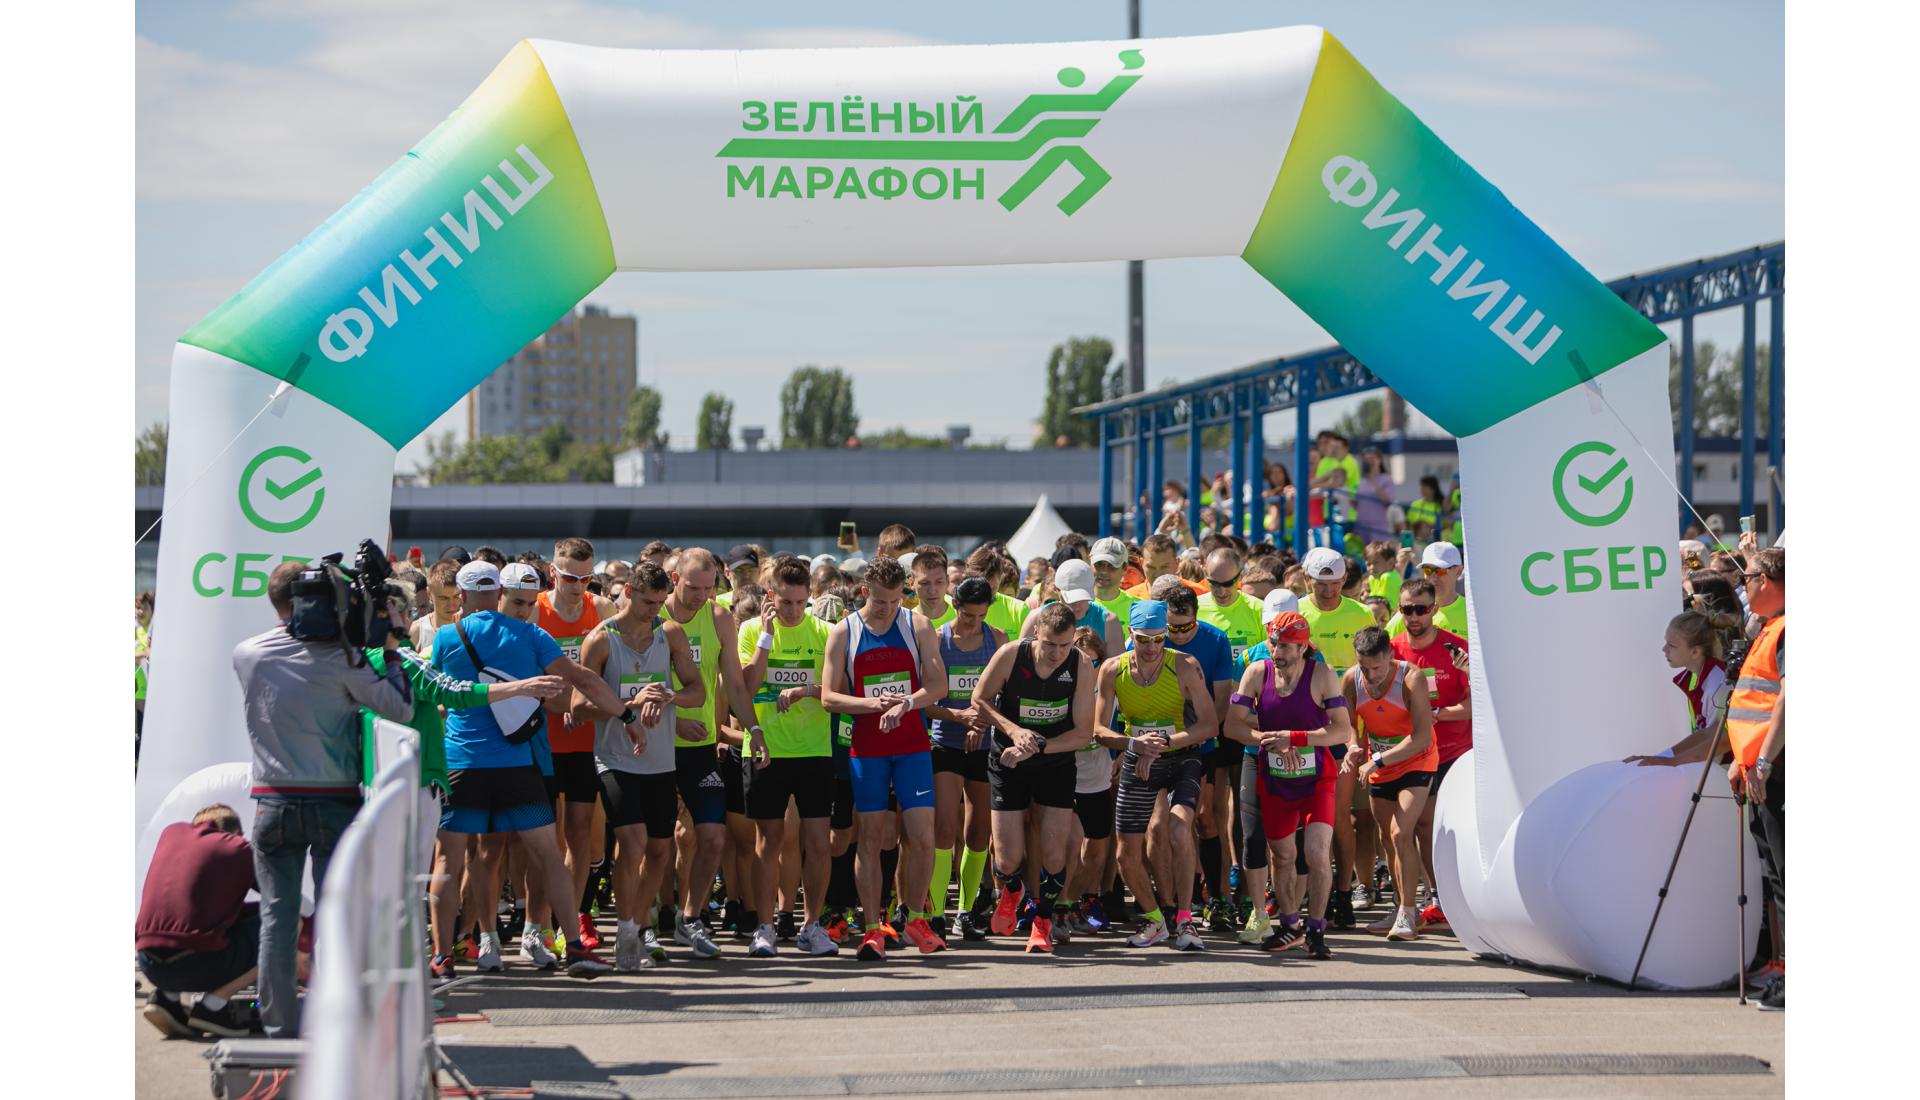 Зеленый марафон регистрация